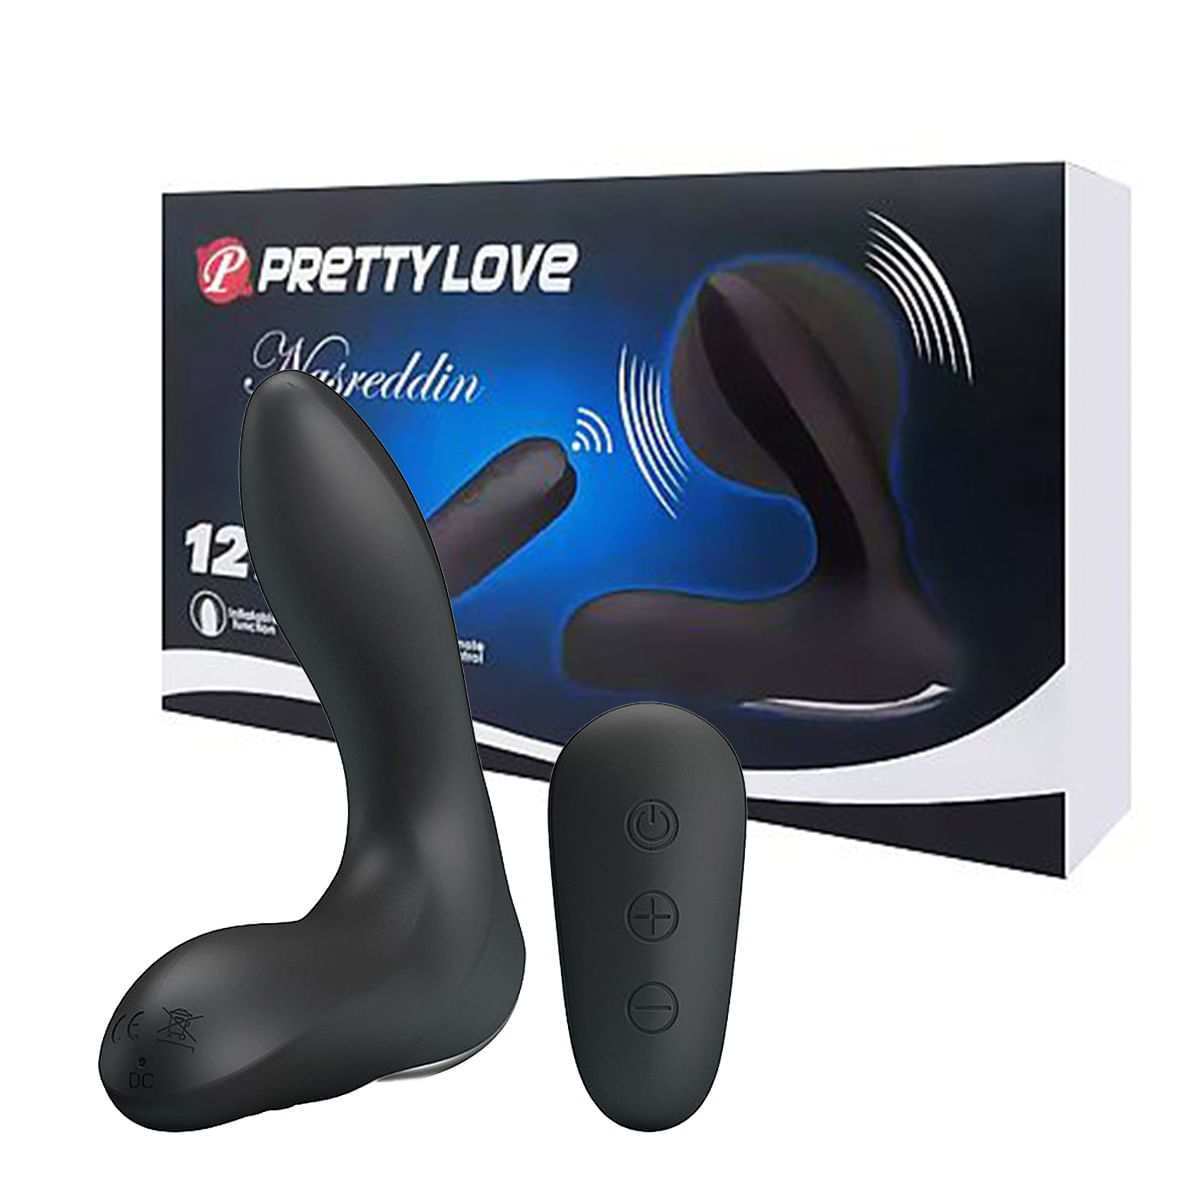 Pretty Love Nasreddin Vibrador de Próstata com 12 Modos de Vibração Sexy Import